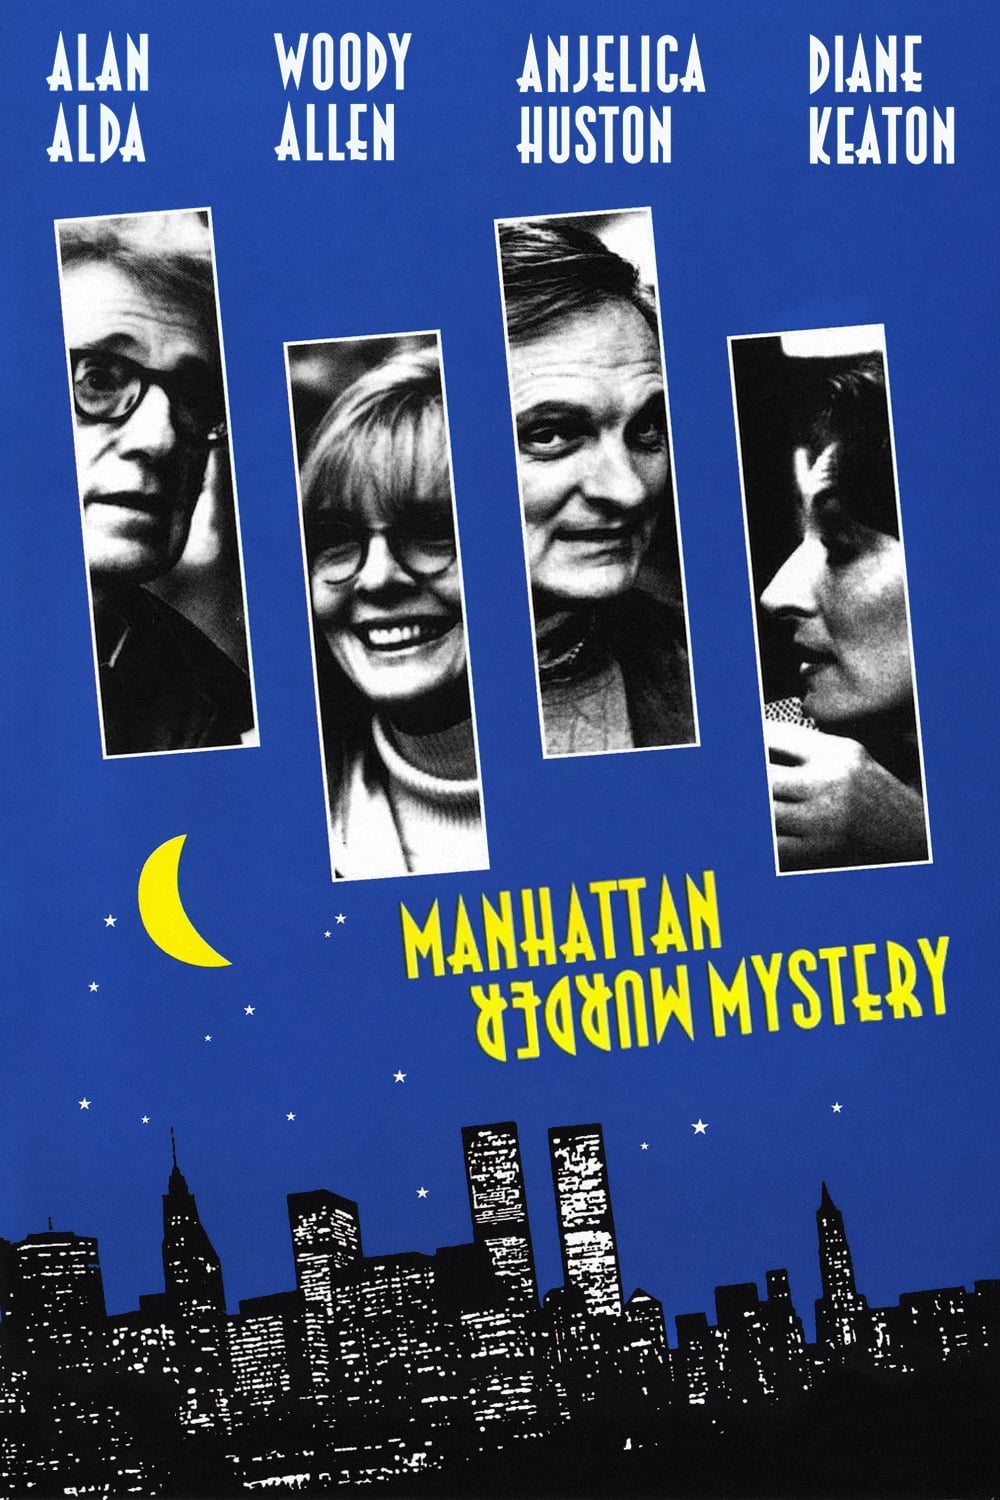 1993 Manhattan Murder Mystery